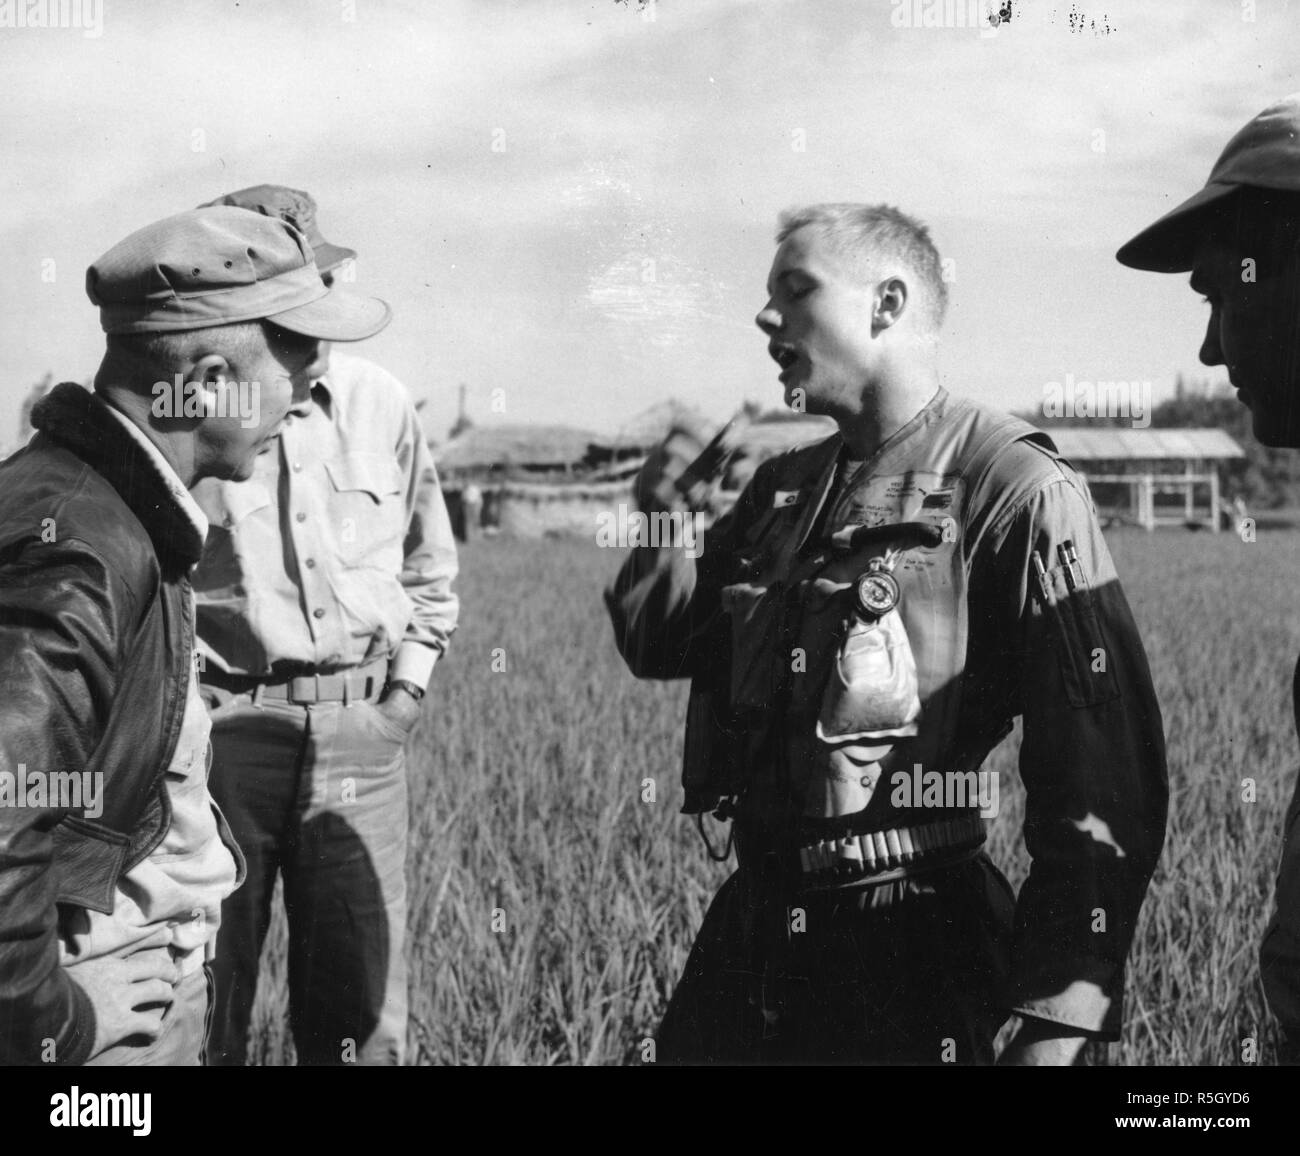 Ensign Neil A. Armstrong, US Navy (y futuro astronauta de la NASA y el primer hombre en caminar sobre la Luna durante la misión Apolo 11) narra el Coronel Carlson A. Roberts, marines, y otros dos hombres no identificados de la molestia que le llevó a rescatar de su F9F "Panther" jet en Corea, 18 de septiembre de 1951. Foto de stock